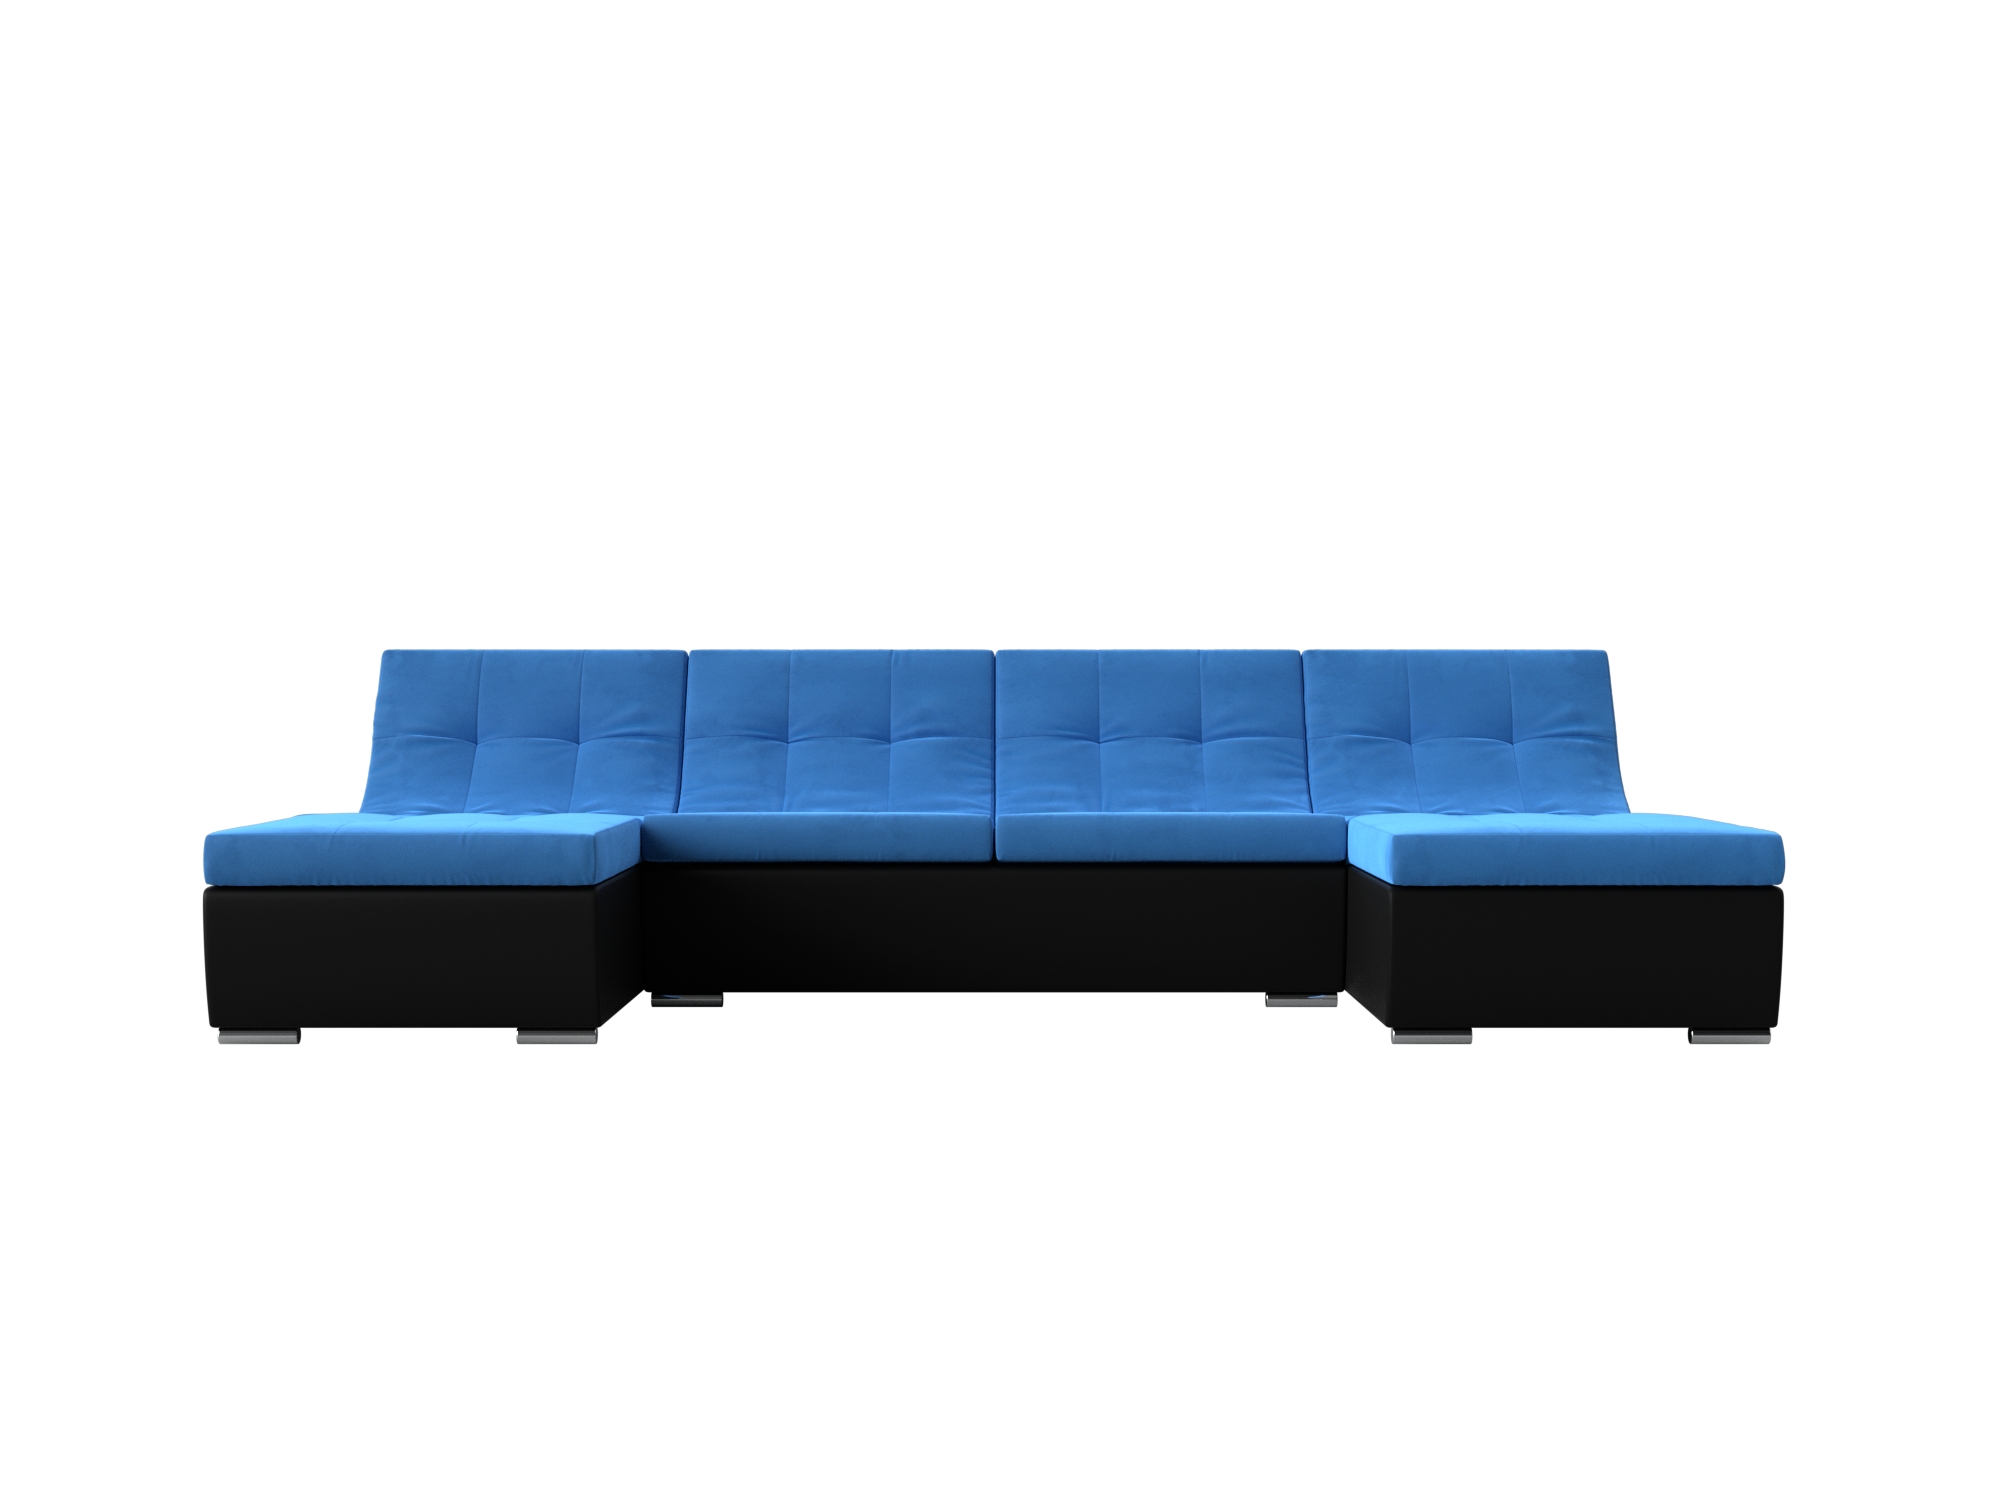 П-образный модульный диван Монреаль MebelVia Голубой, Черный, Велюр, Экокожа, ЛДСП п образный модульный диван монреаль long mebelvia серый черный велюр экокожа лдсп